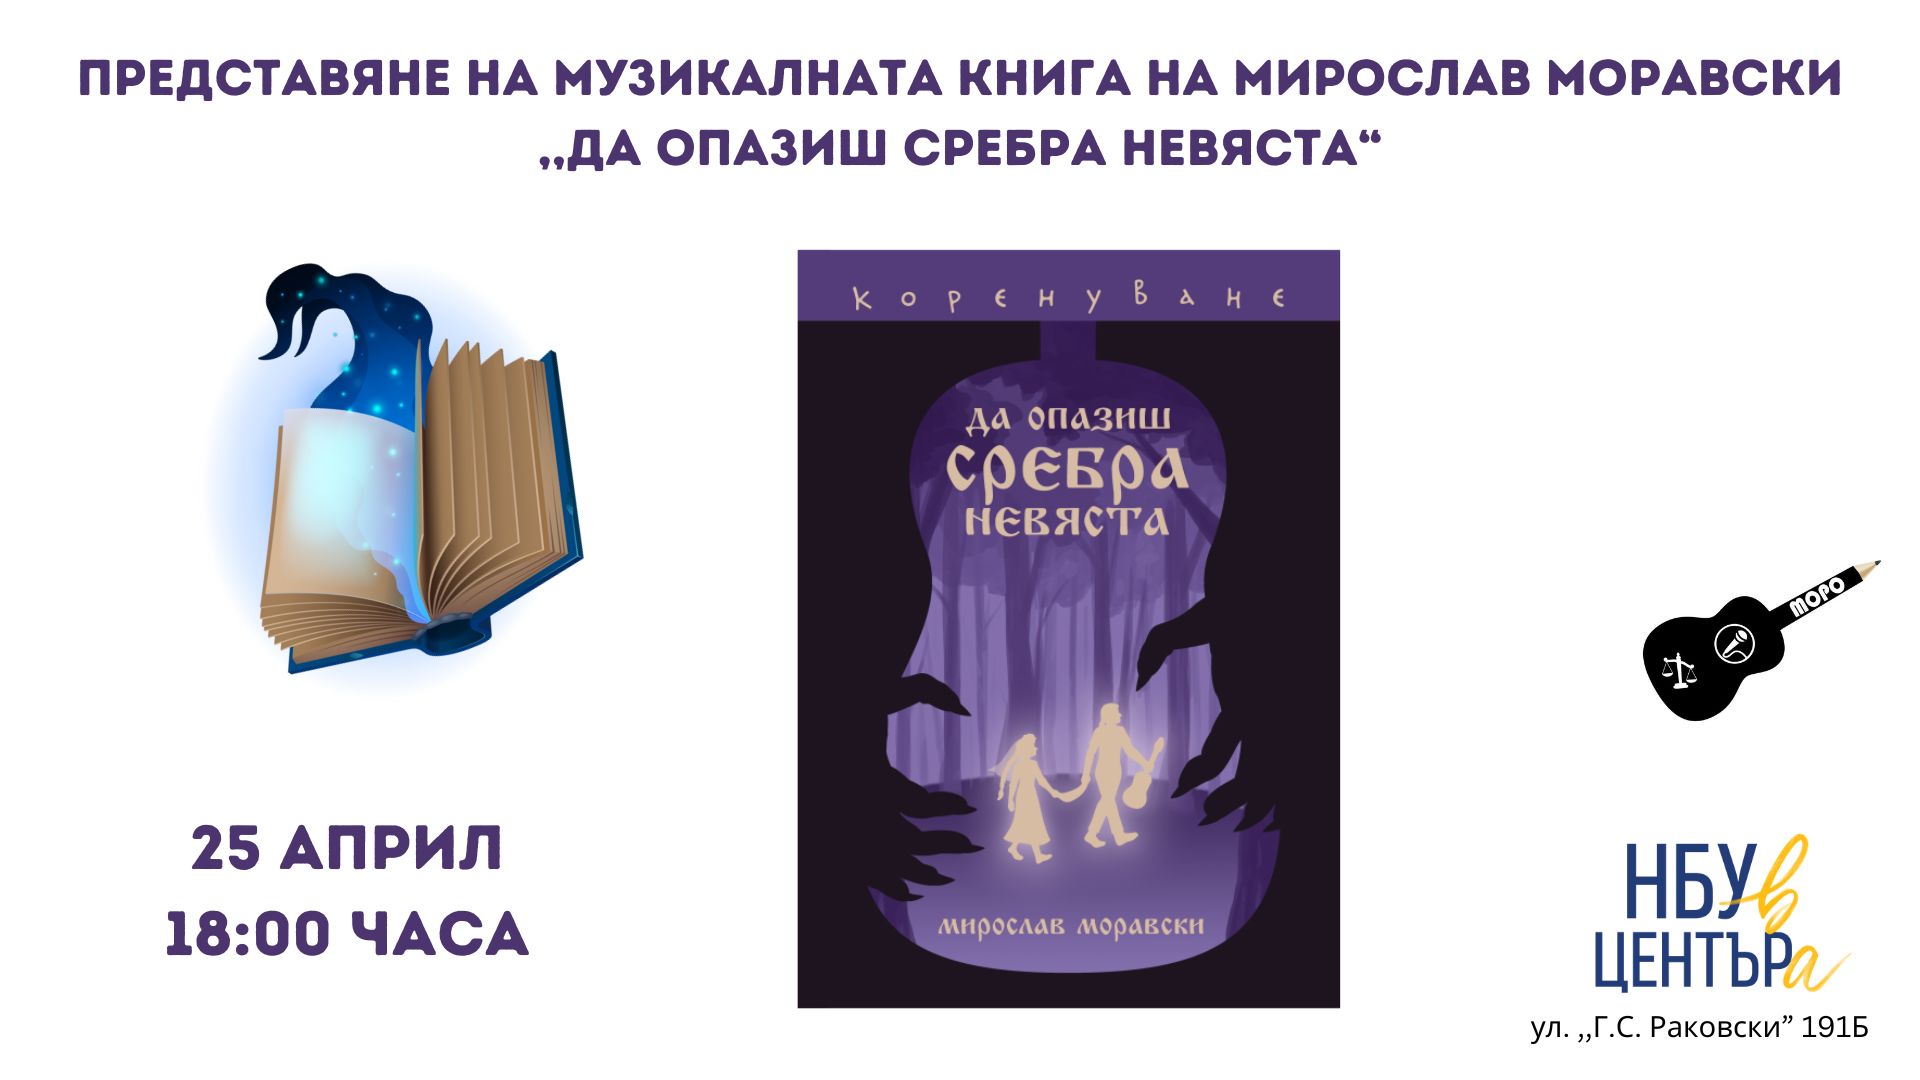 Представяне на музикална книга на Мирослав Моравски „Да опазиш Сребра невяста“